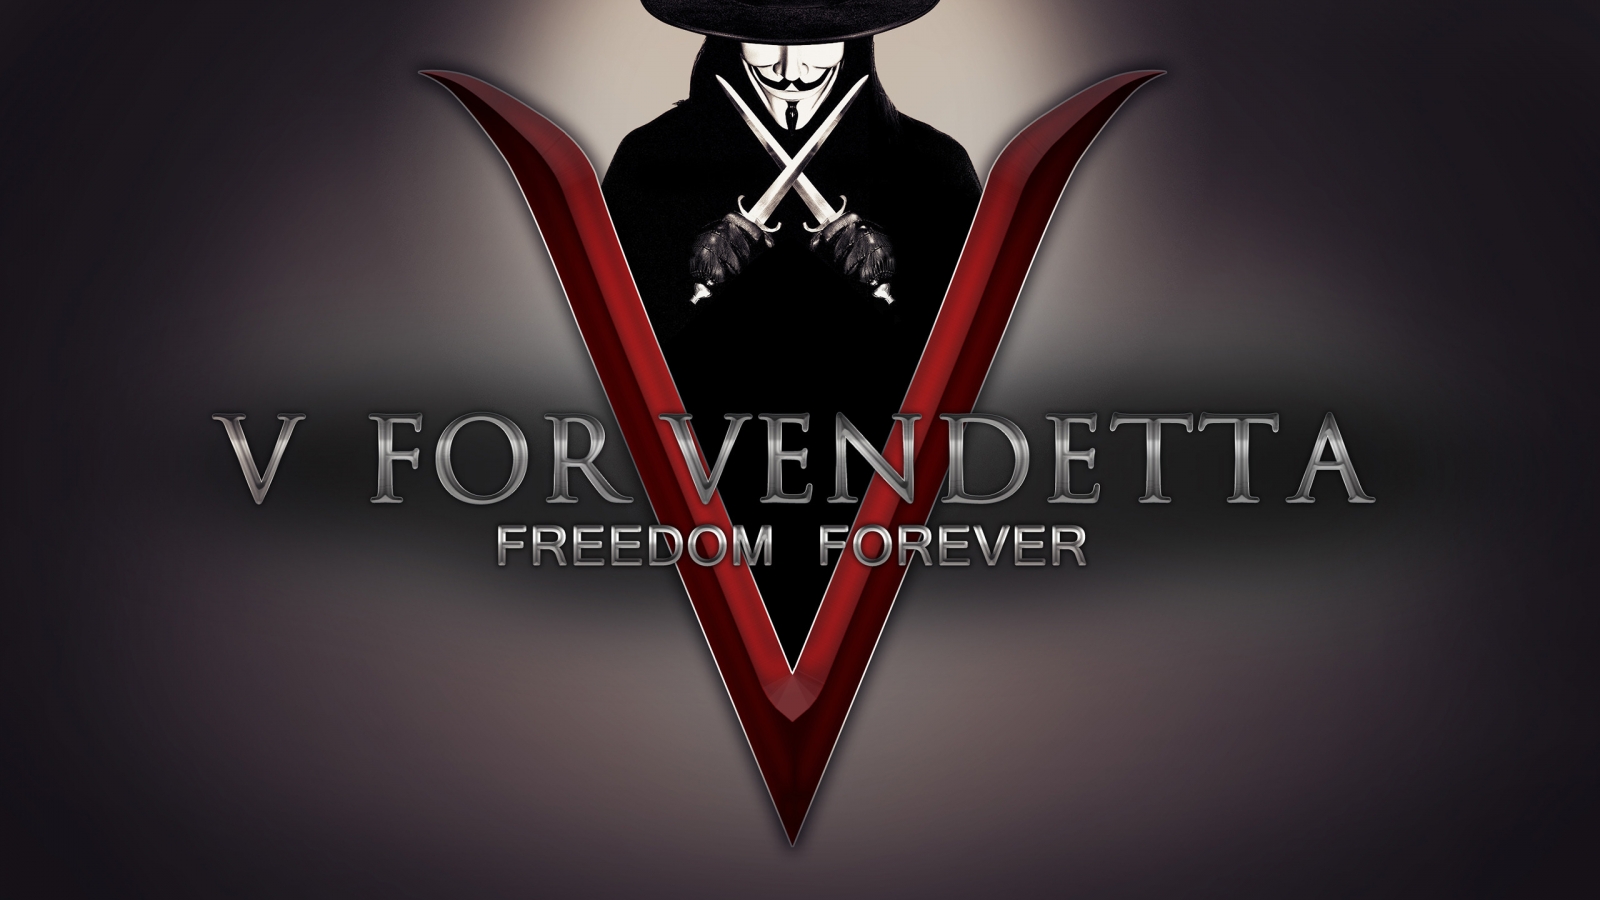 V for Vendetta Freedom Forever for 1600 x 900 HDTV resolution